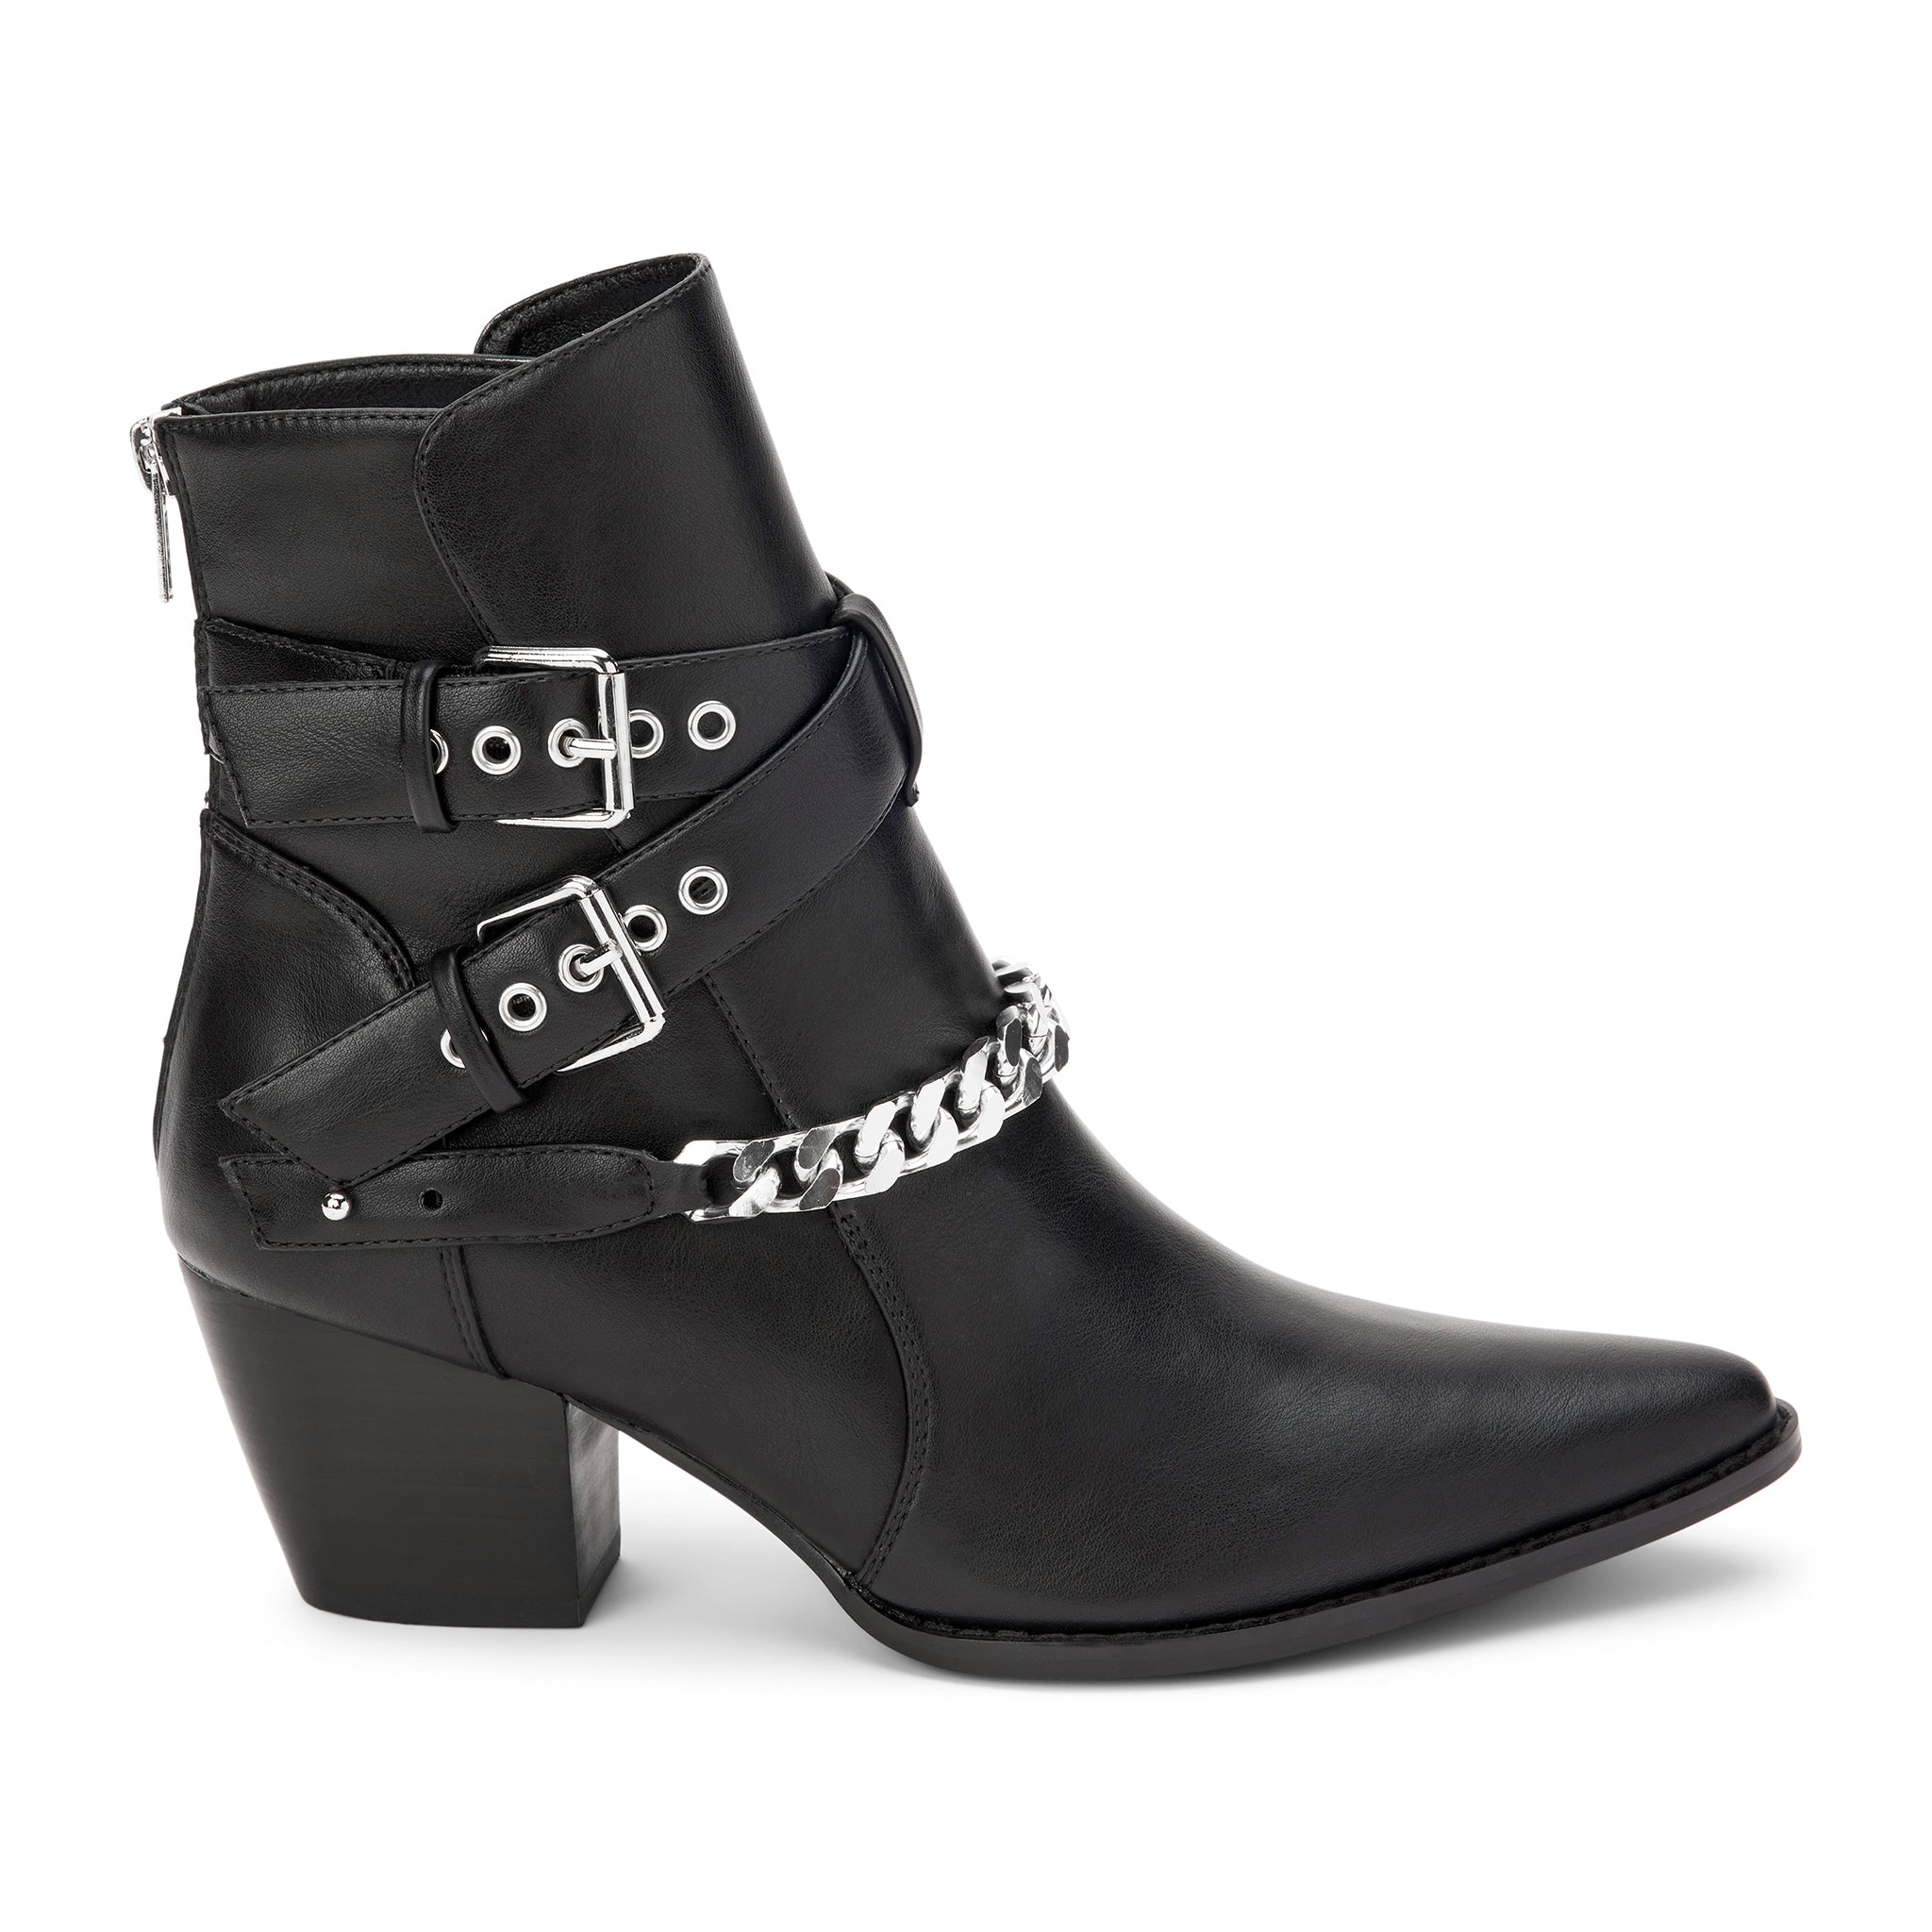 Jill Ankle Boots - Women's Fashion Footwear – Matisse Footwear